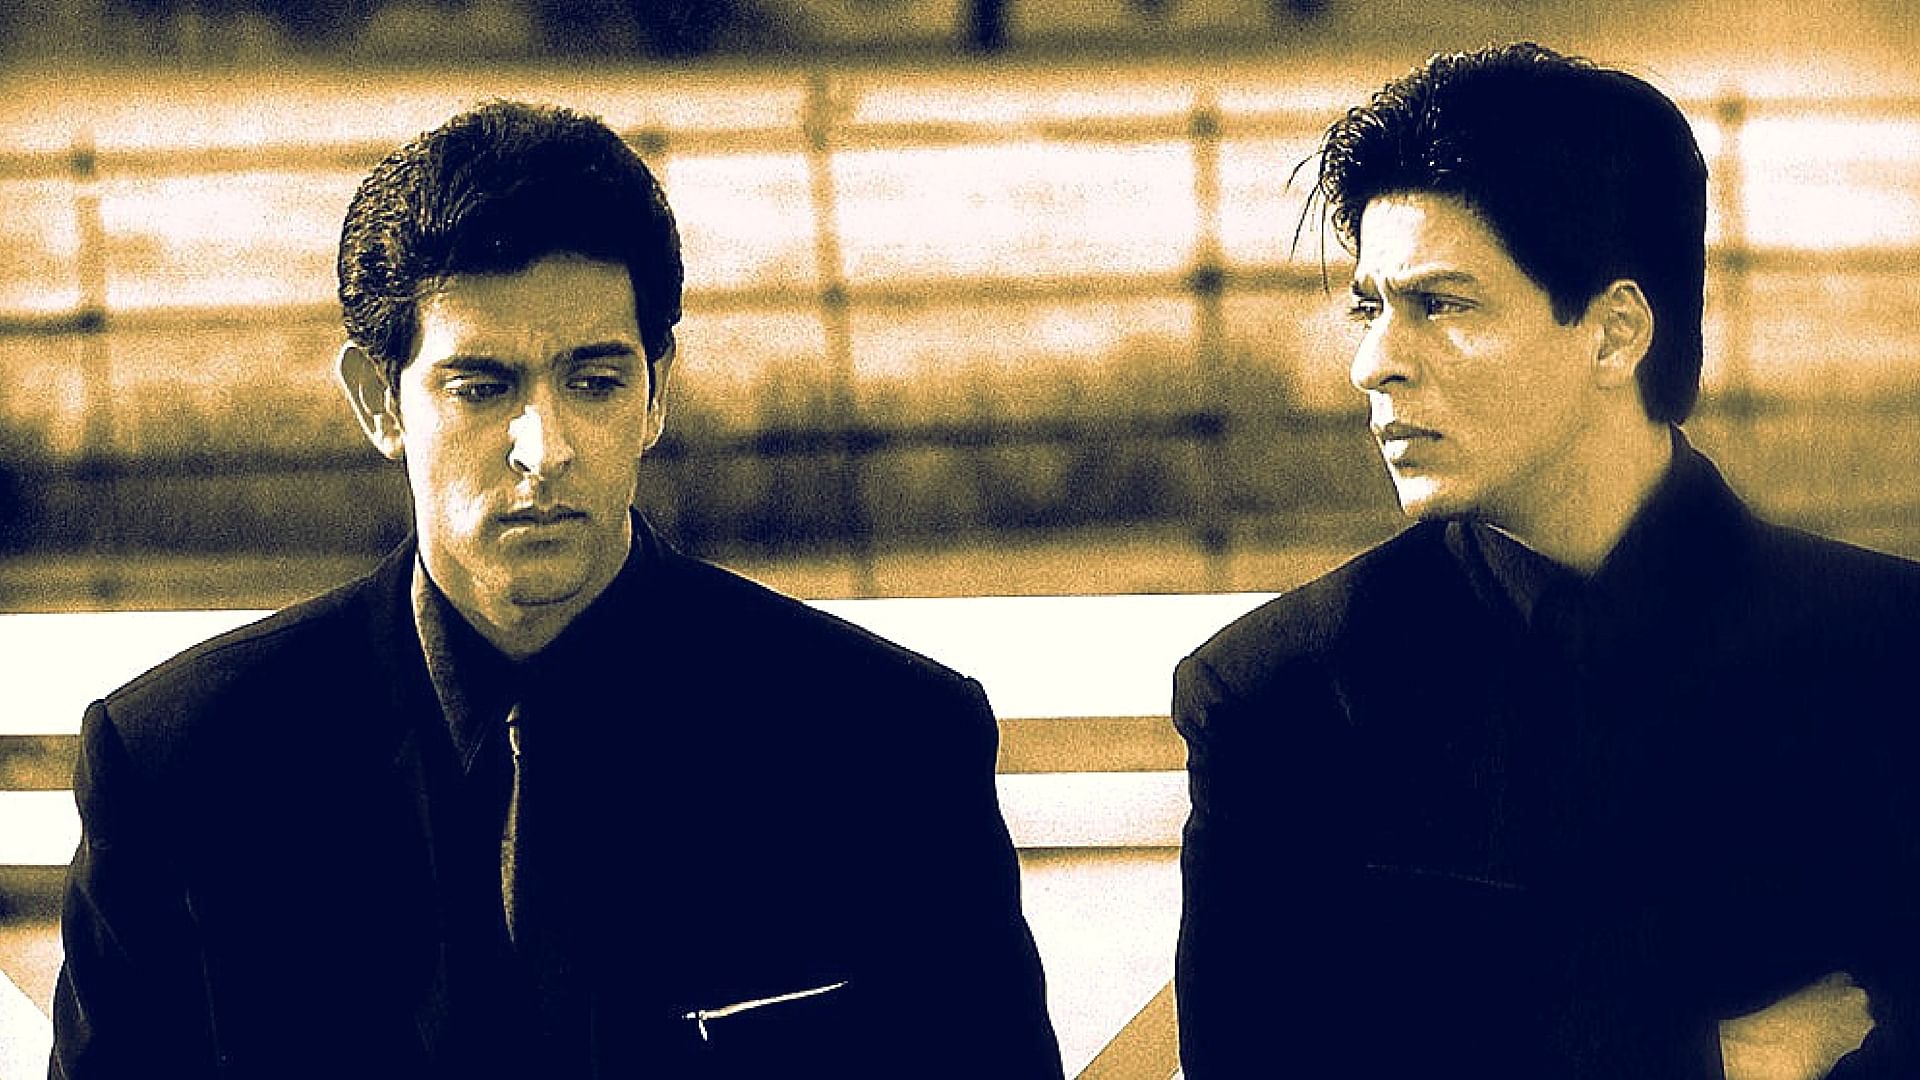 Raees Vs Kaabil: A History Of Shah Rukh Khan, Hrithik Roshan's Box Office  Clash